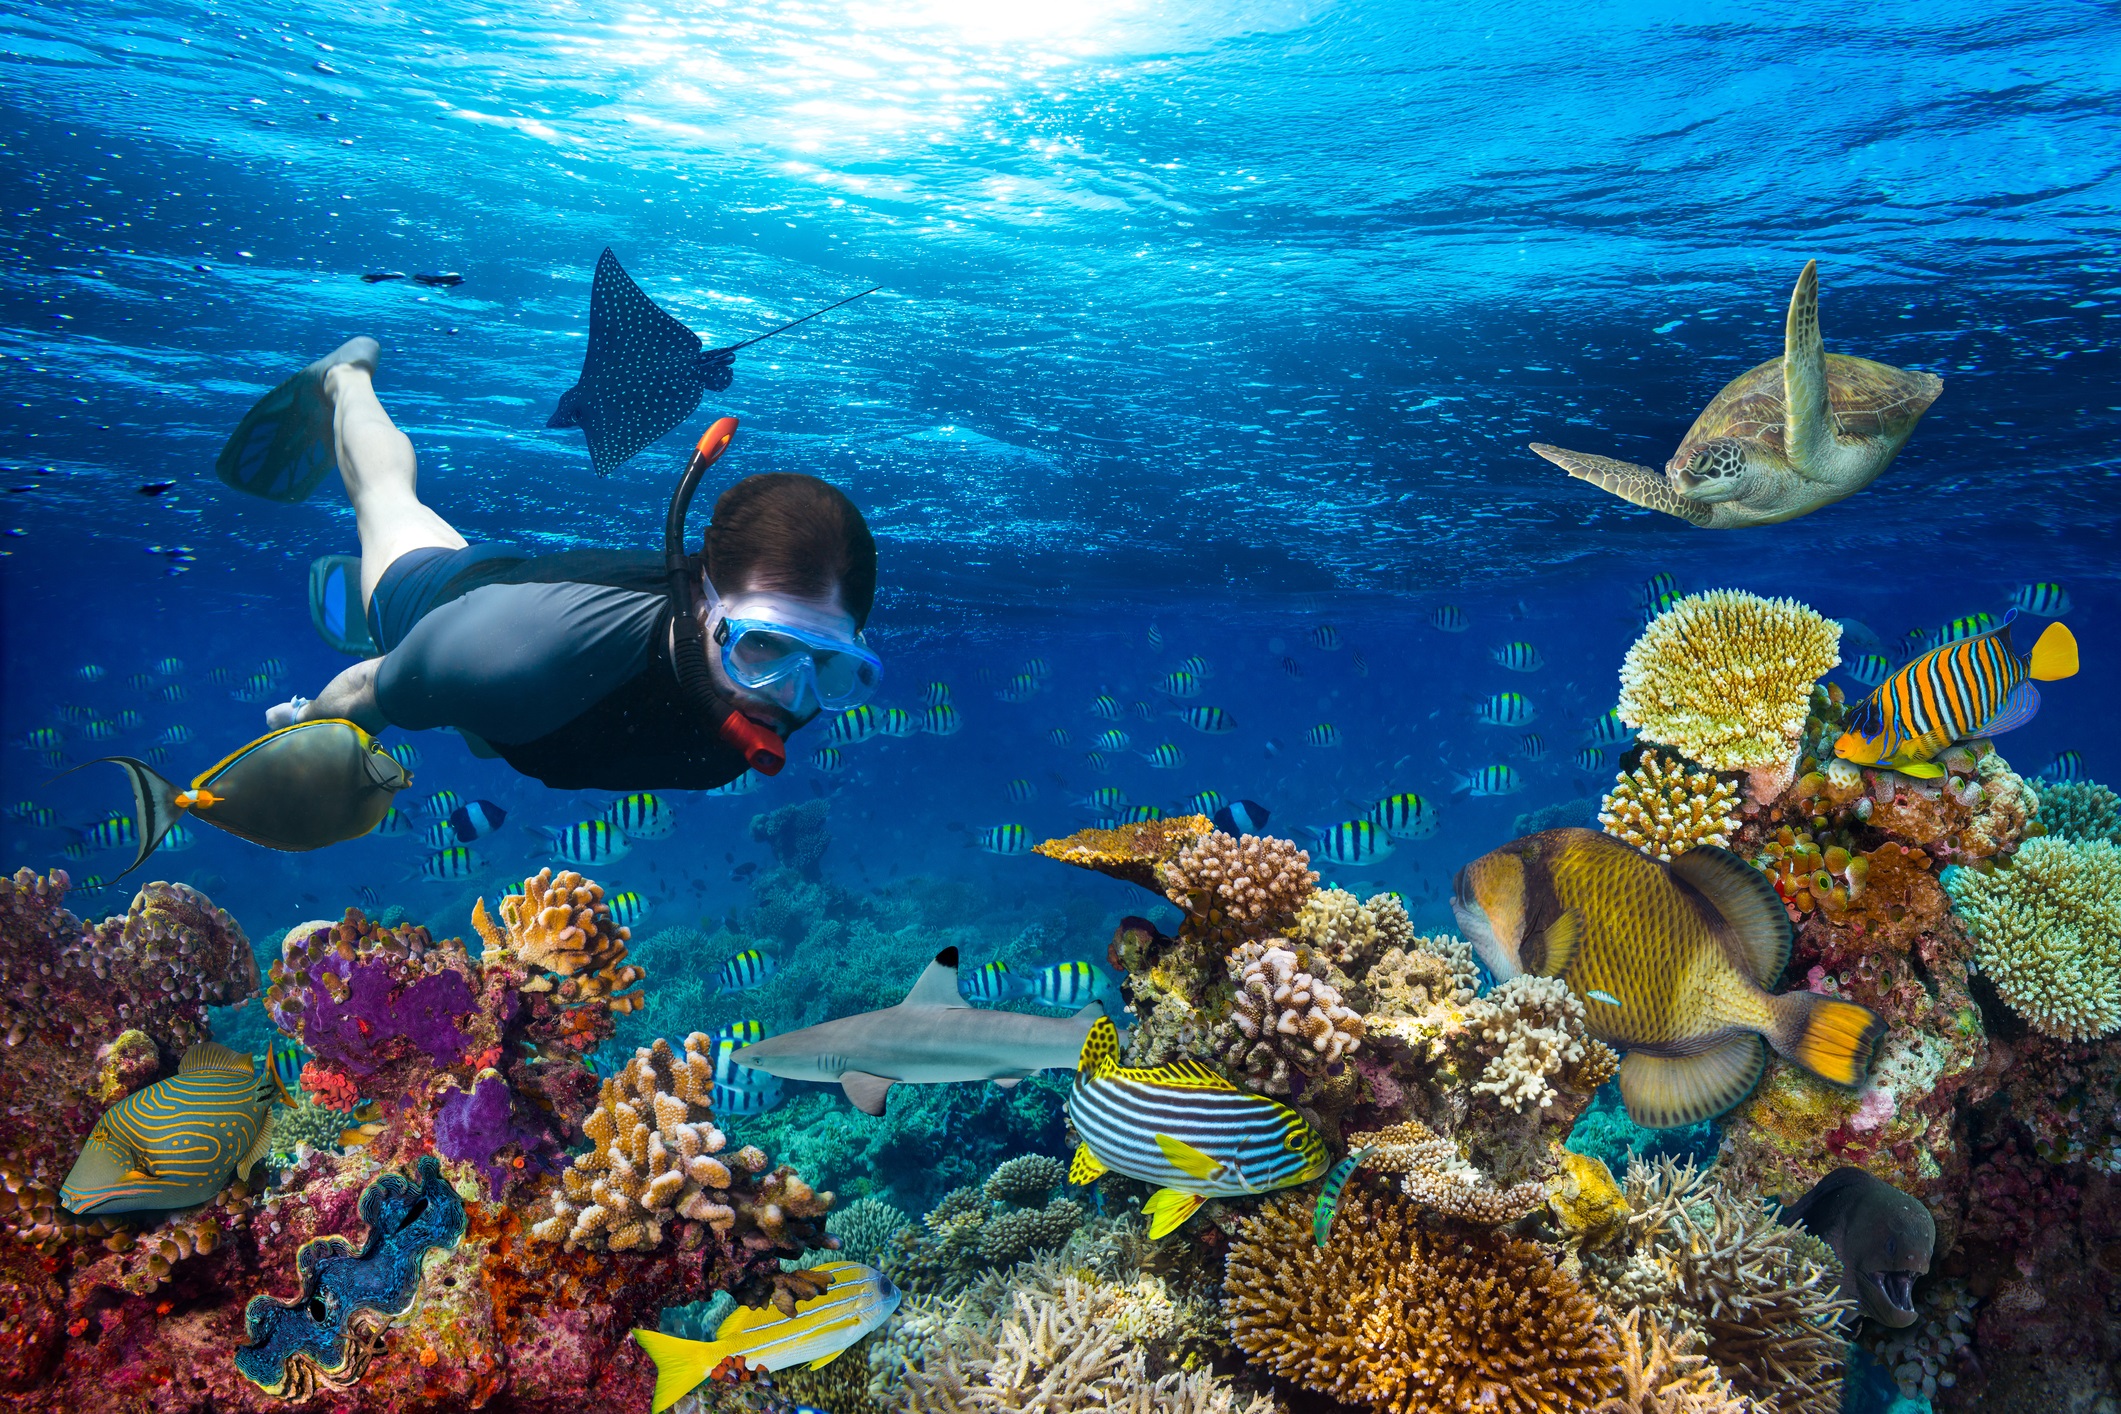 Маая Тила, Малдиви<br />
Райската островна държава Малдиви е мечтана дестинация не само за почивка за хиляди хора, но се слави като едно от най-добрите места за гмуркане в света.<br />
Подводната флора и фауна, кораловите рифове, тюркоазените чисти води предлагат отлични условия, както за гмуркане с шнорхел и плавници, така и за напреднали гмуркачи, които могат да се спуснат на дълбоко, за да опознаят невероятния подводен свят. Маая Тила е коралов остров с диаметър 80 кв.м. който лесно може да се обиколи от всички страни само с едно гмуркане.